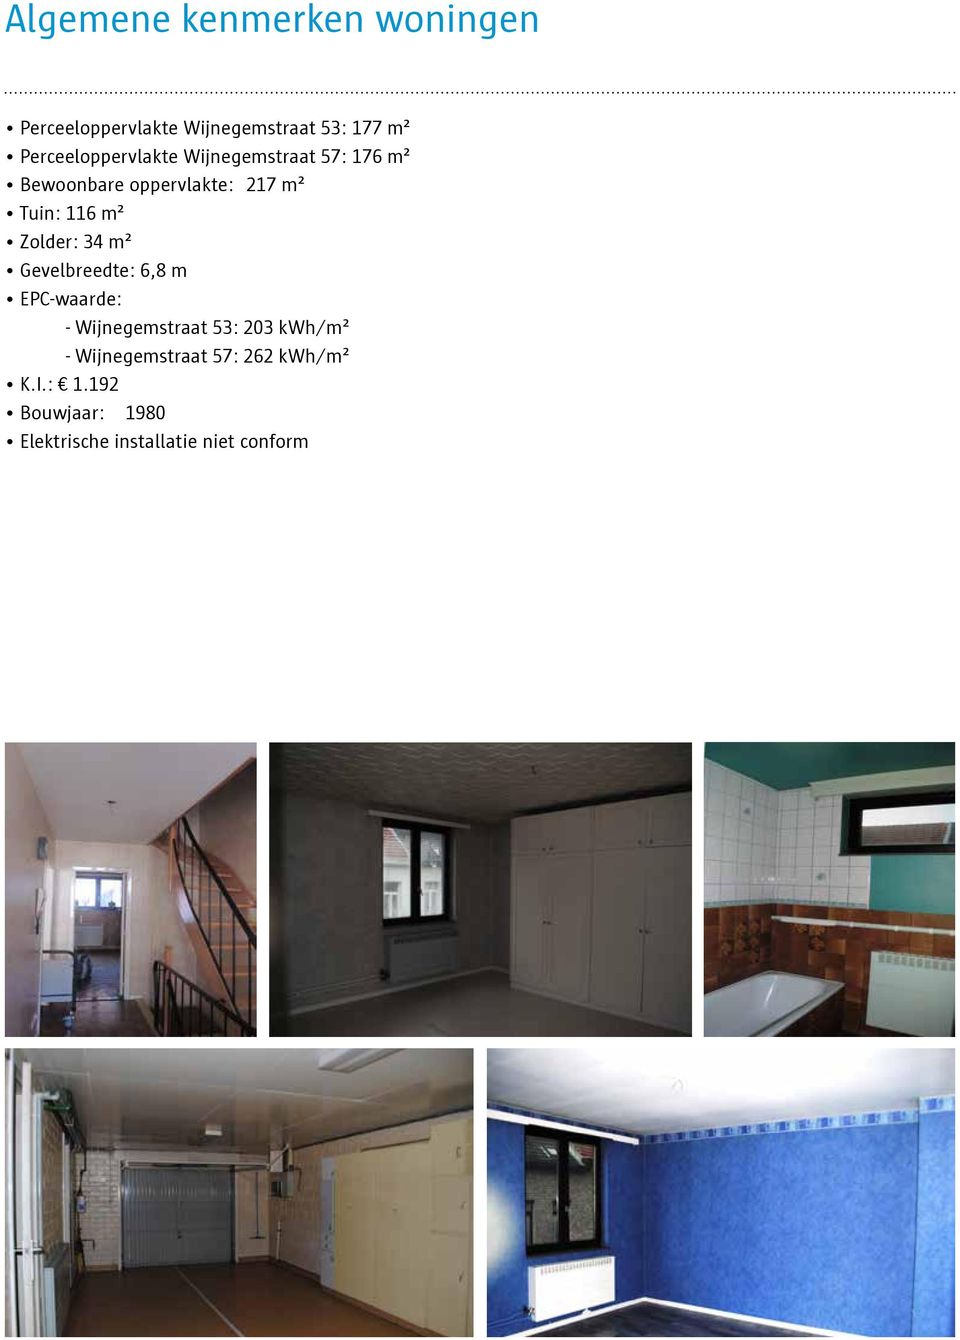 116 m² Zolder: 34 m² Gevelbreedte: 6,8 m EPC-waarde: - Wijnegemstraat 53: 203